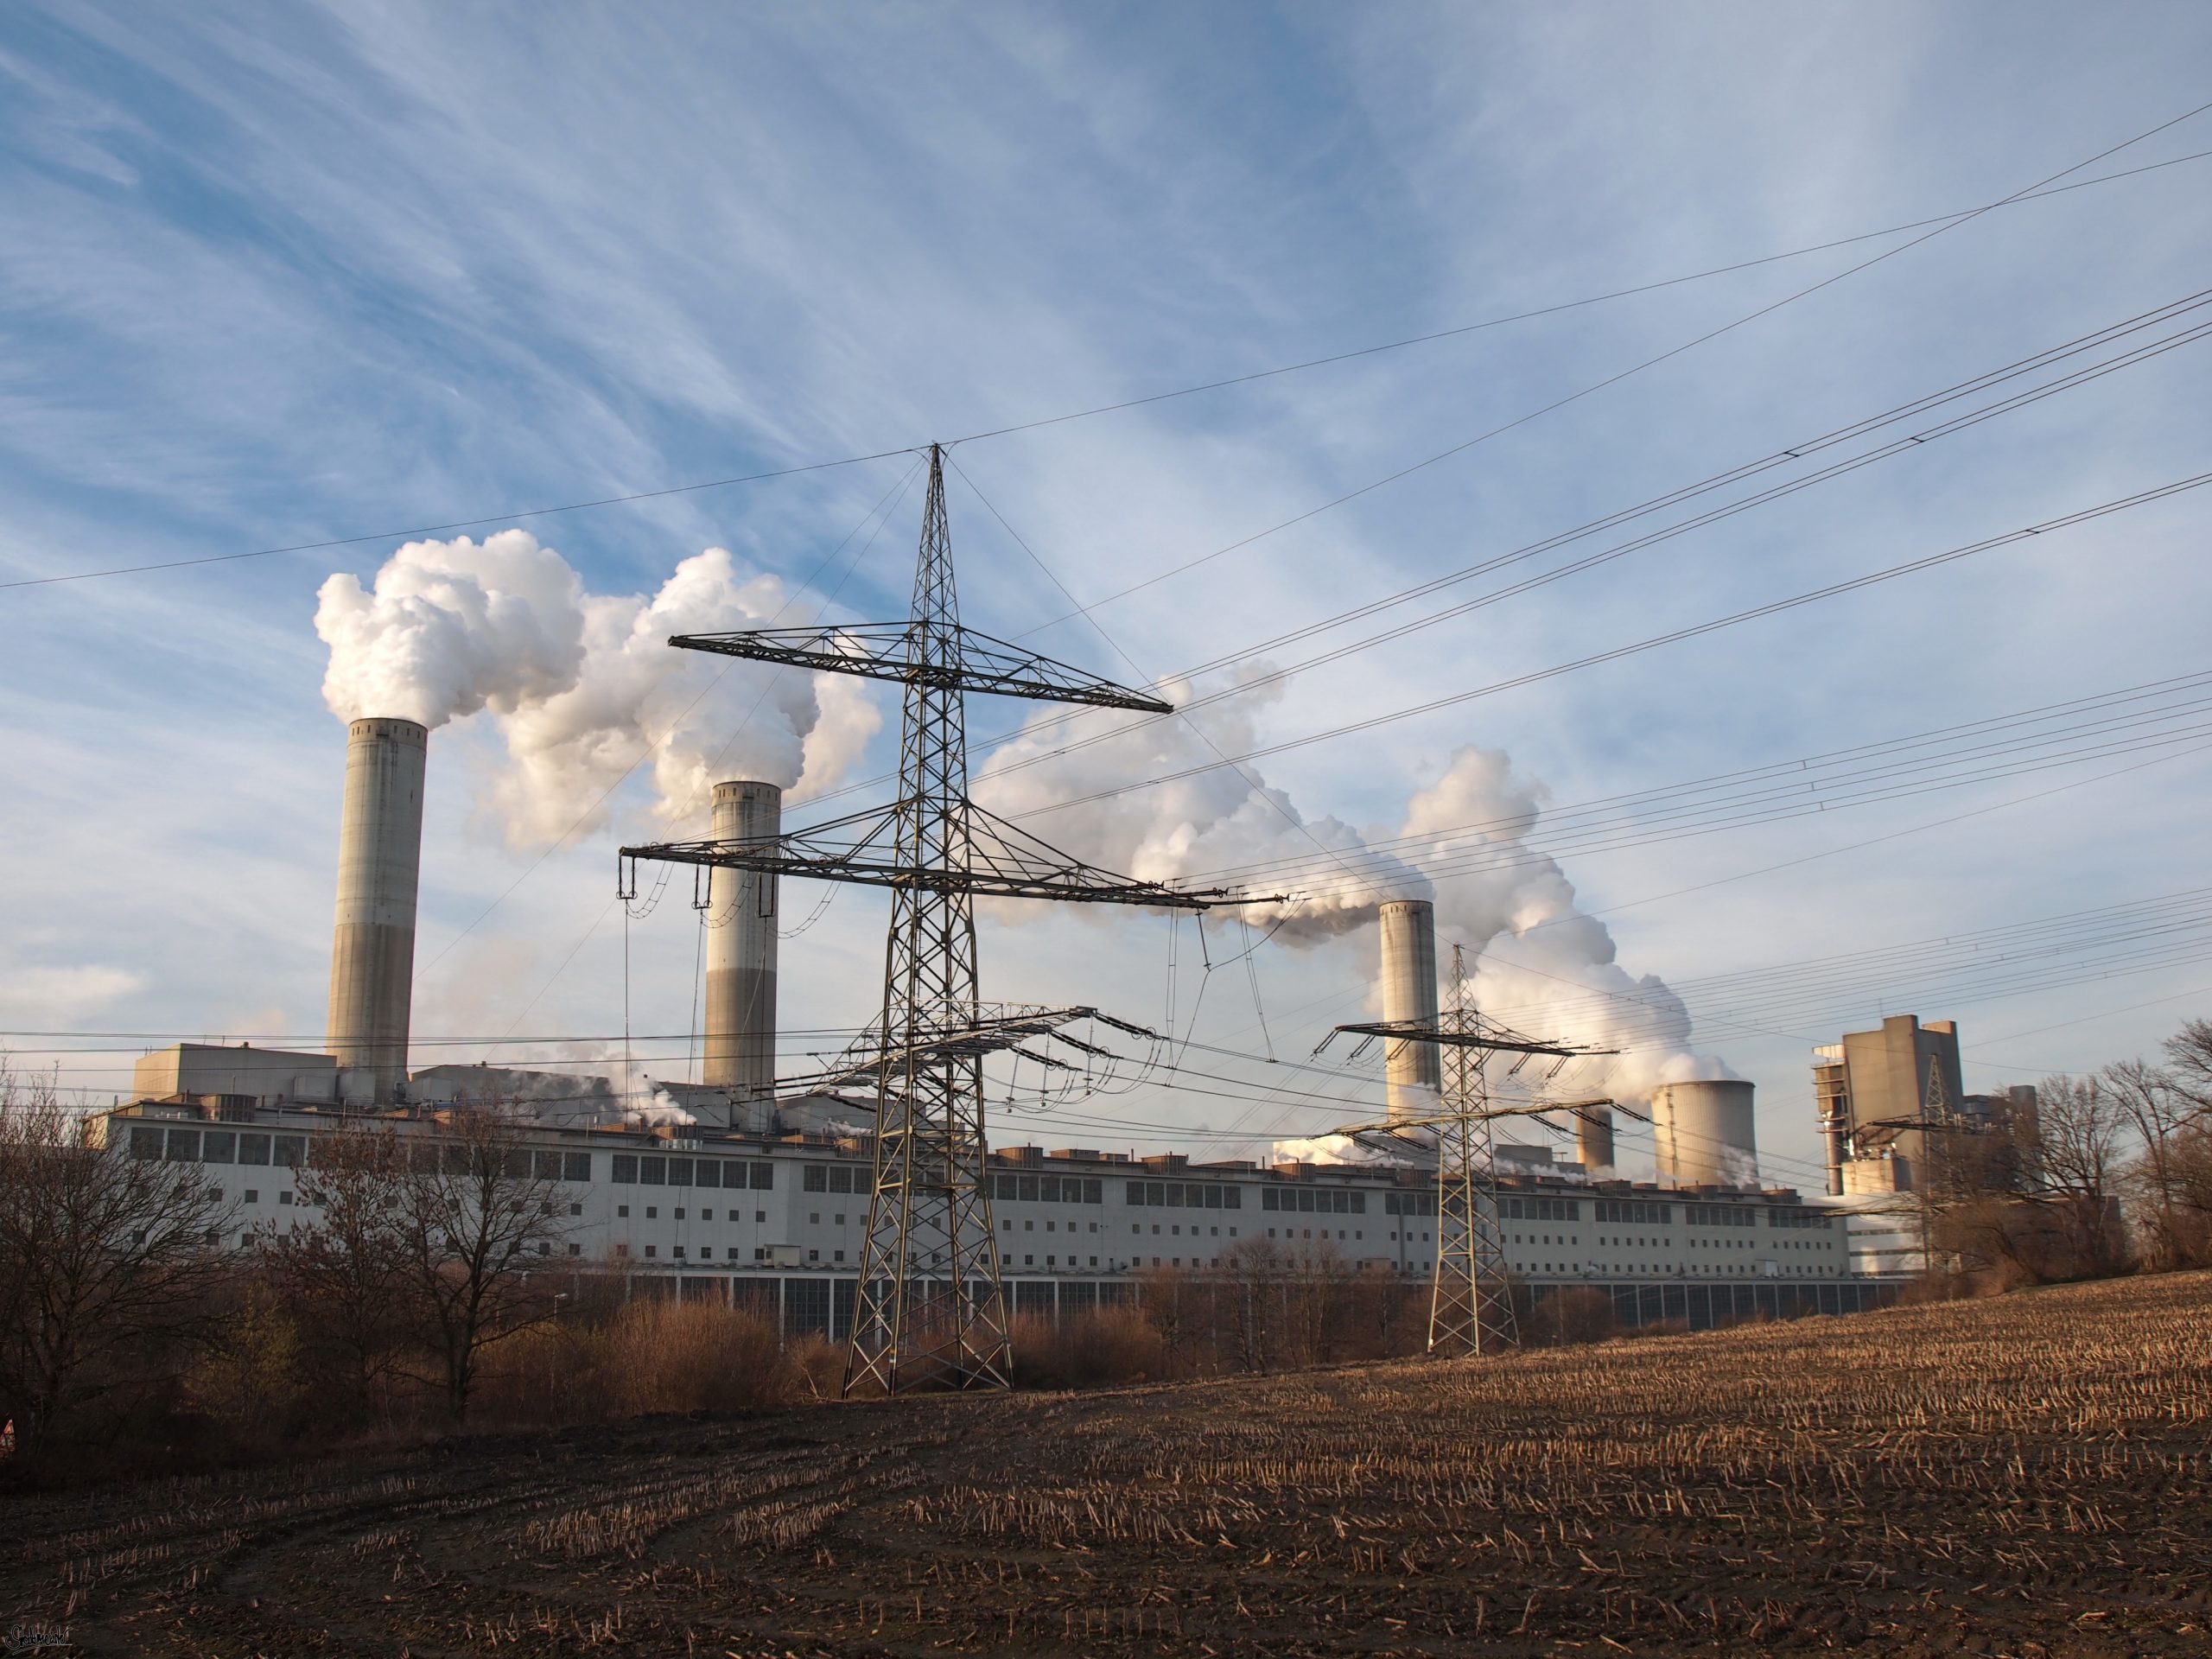 Termoelektrana Frimersdorf na lignit, u gradu Grevenbrojh u Severnoj Rajni Vestfaliji, zatvorena je u septembru 2021. godine; postupak gašenja je trajao četiri godine. Bila jedna od najvećih elektrana na ugalj u Nemačkoj, a početkom 1970-ih bila je najveća elektrana na svetu, na lignit, imala je 16 blokova (Foto: Vikipedia)